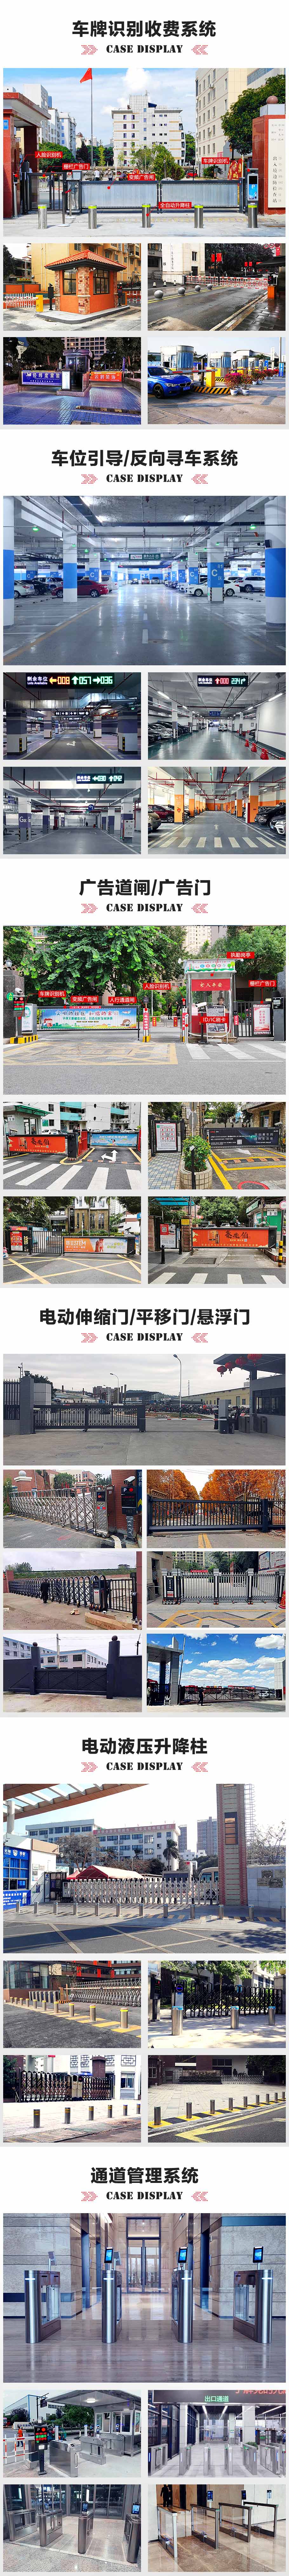 深圳香港中文大學智能停車場管理系統